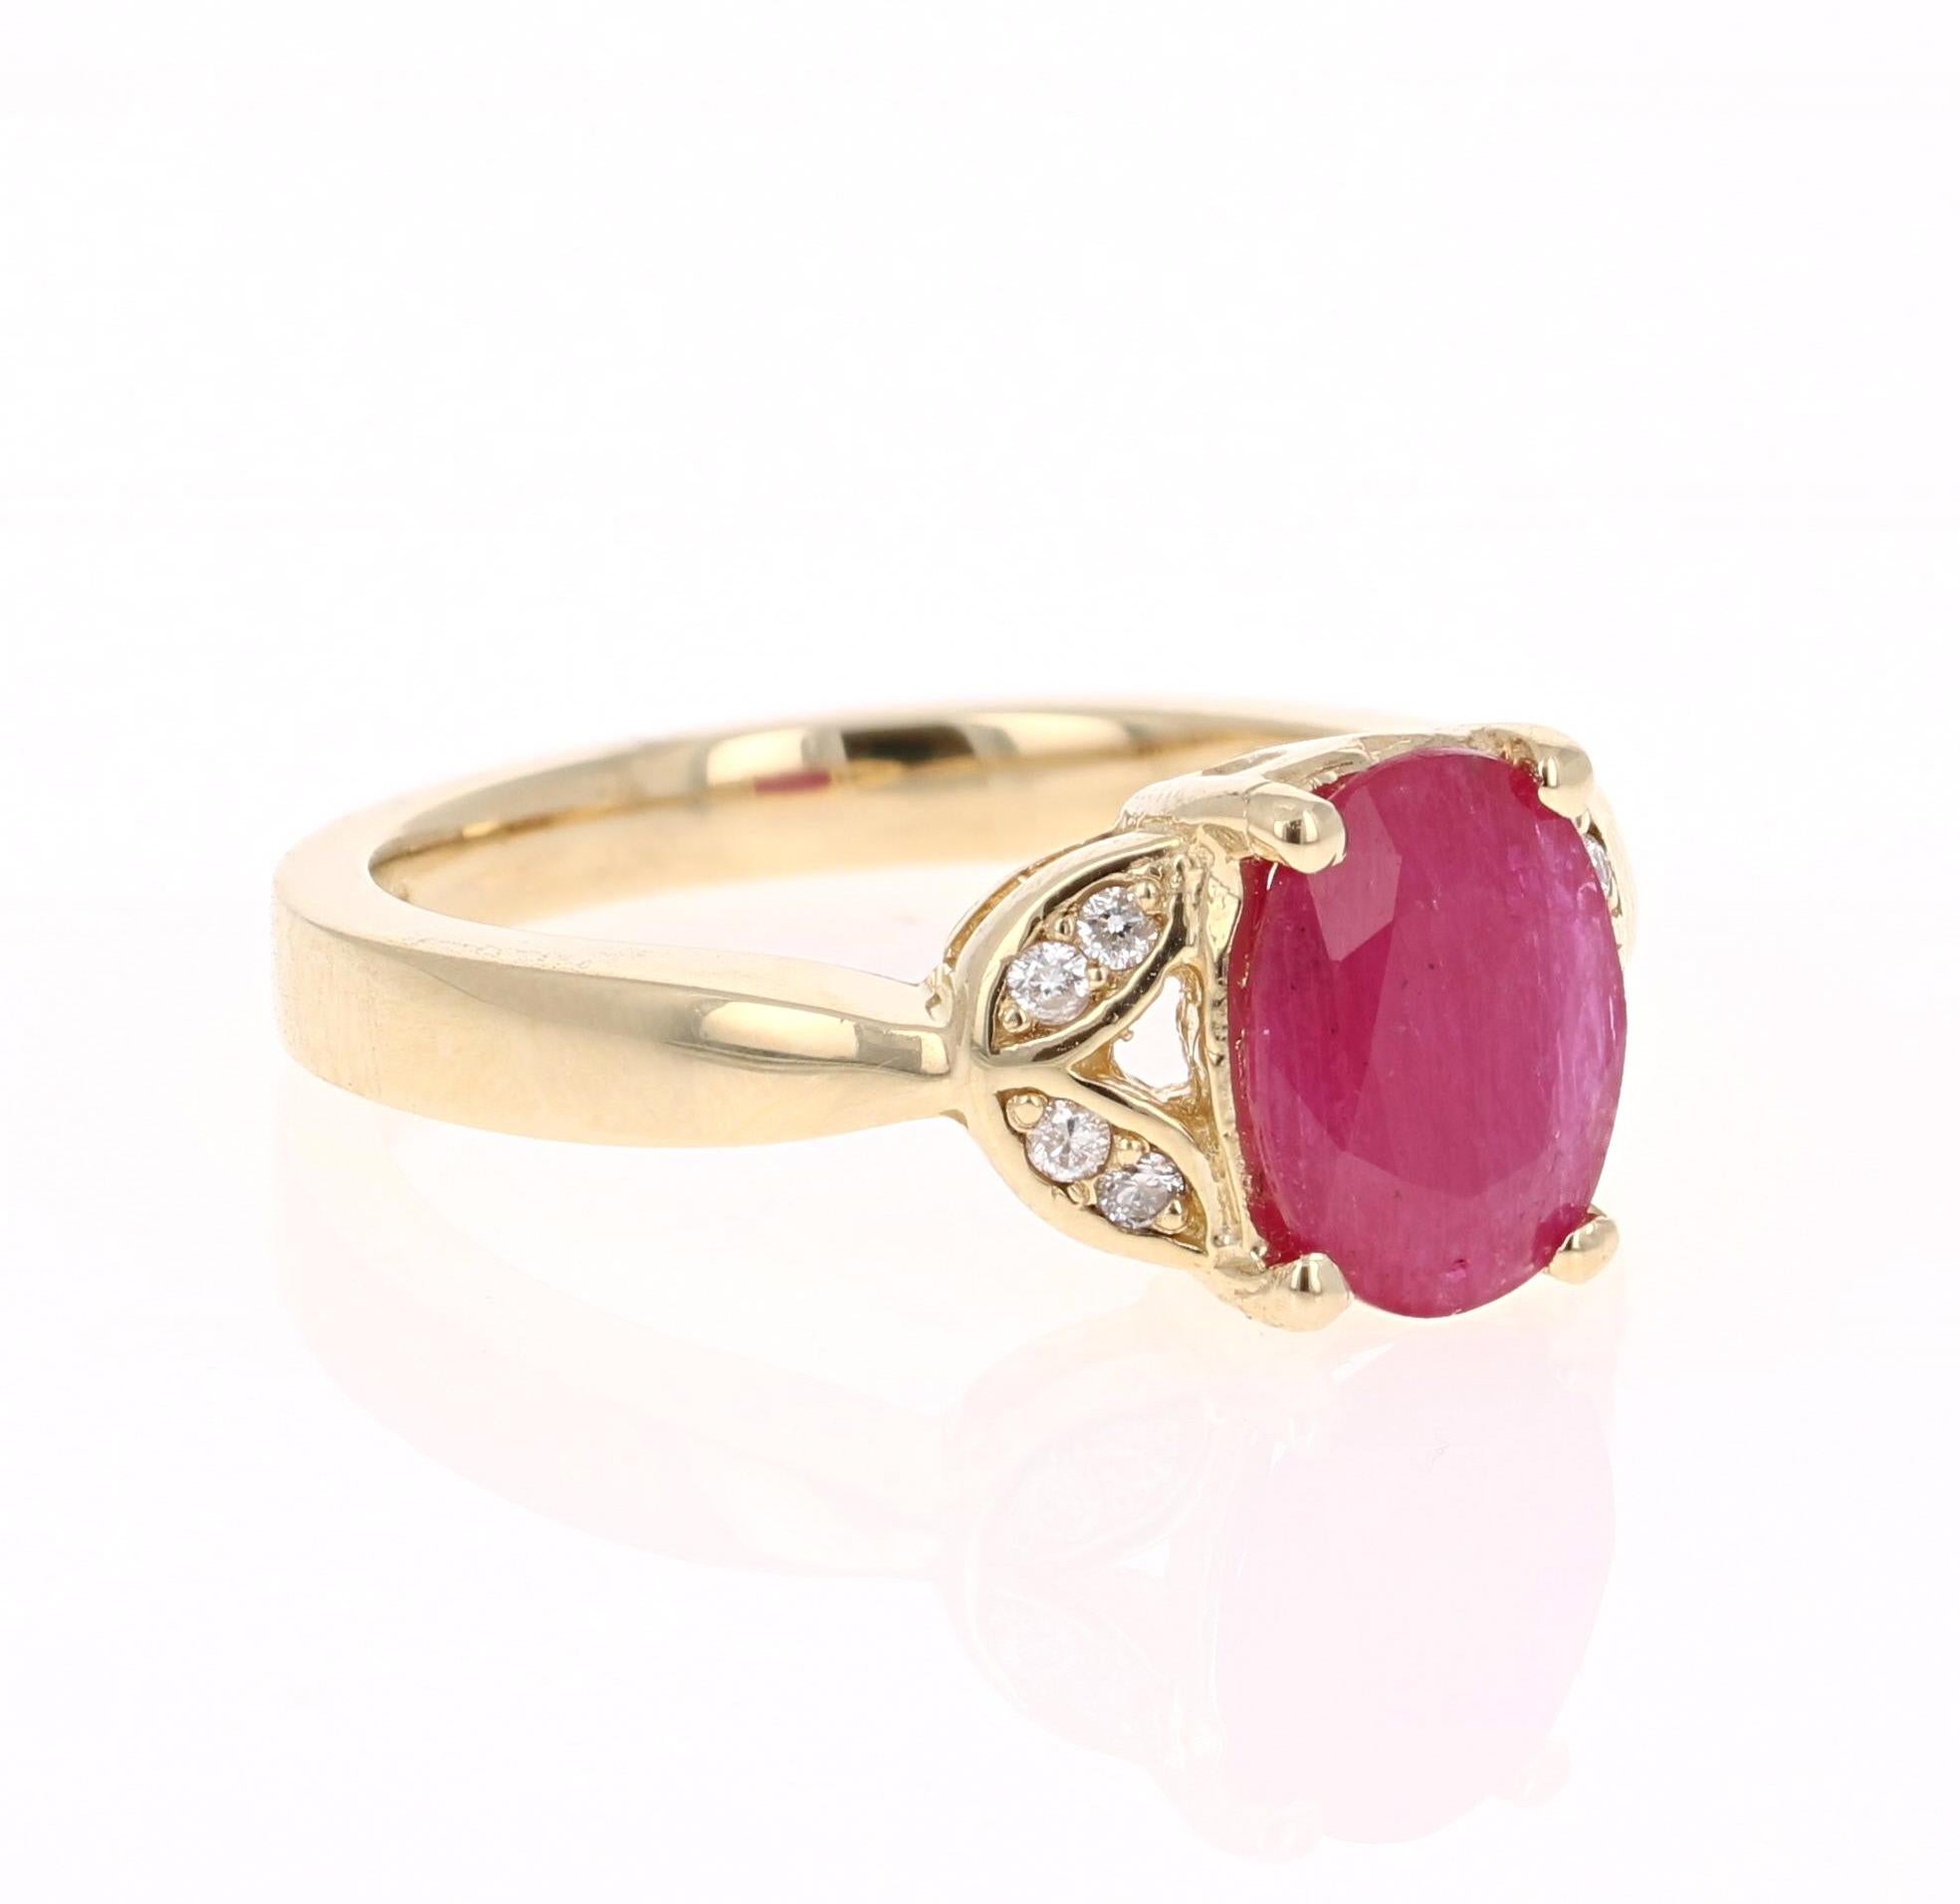 Einfach schöner Rubin-Diamant-Ring mit einem Rubin im Ovalschliff von 1,75 Karat, der von 8 Diamanten im Rundschliff mit einem Gewicht von 0,08 Karat umgeben ist. Das Gesamtkaratgewicht des Rings beträgt 1,83 Karat. 

Der Ring ist aus 14-karätigem